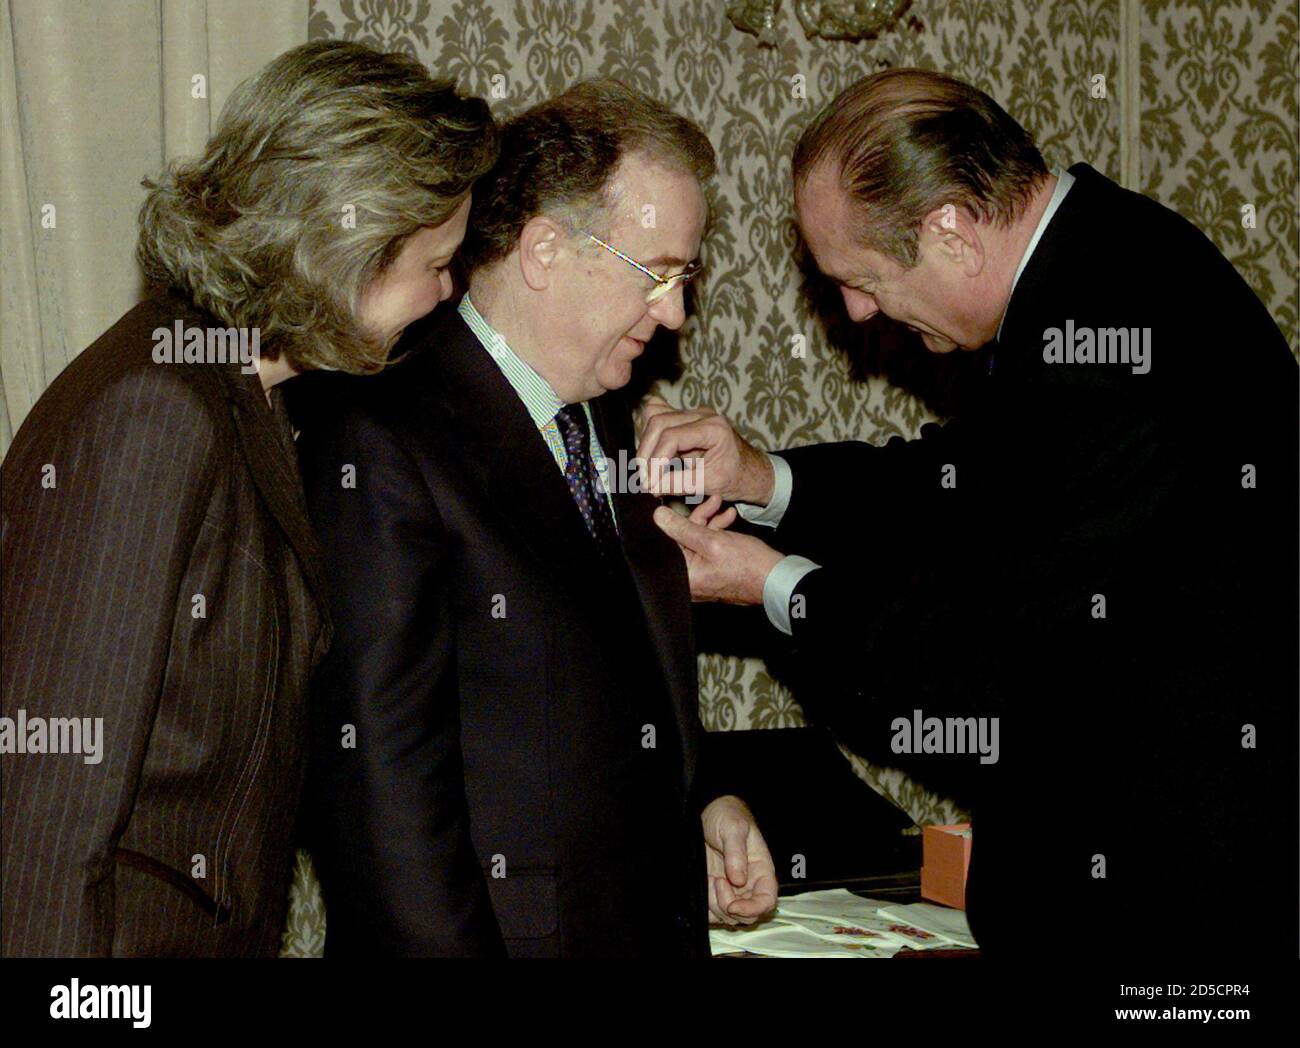 El presidente portugués Jorge Sampaio (C) acompañado por su esposa María  José Rita (L) recibe de su homólogo francés Jacques Chirac (R) la insignia  de honor de la Gran Cruz de la